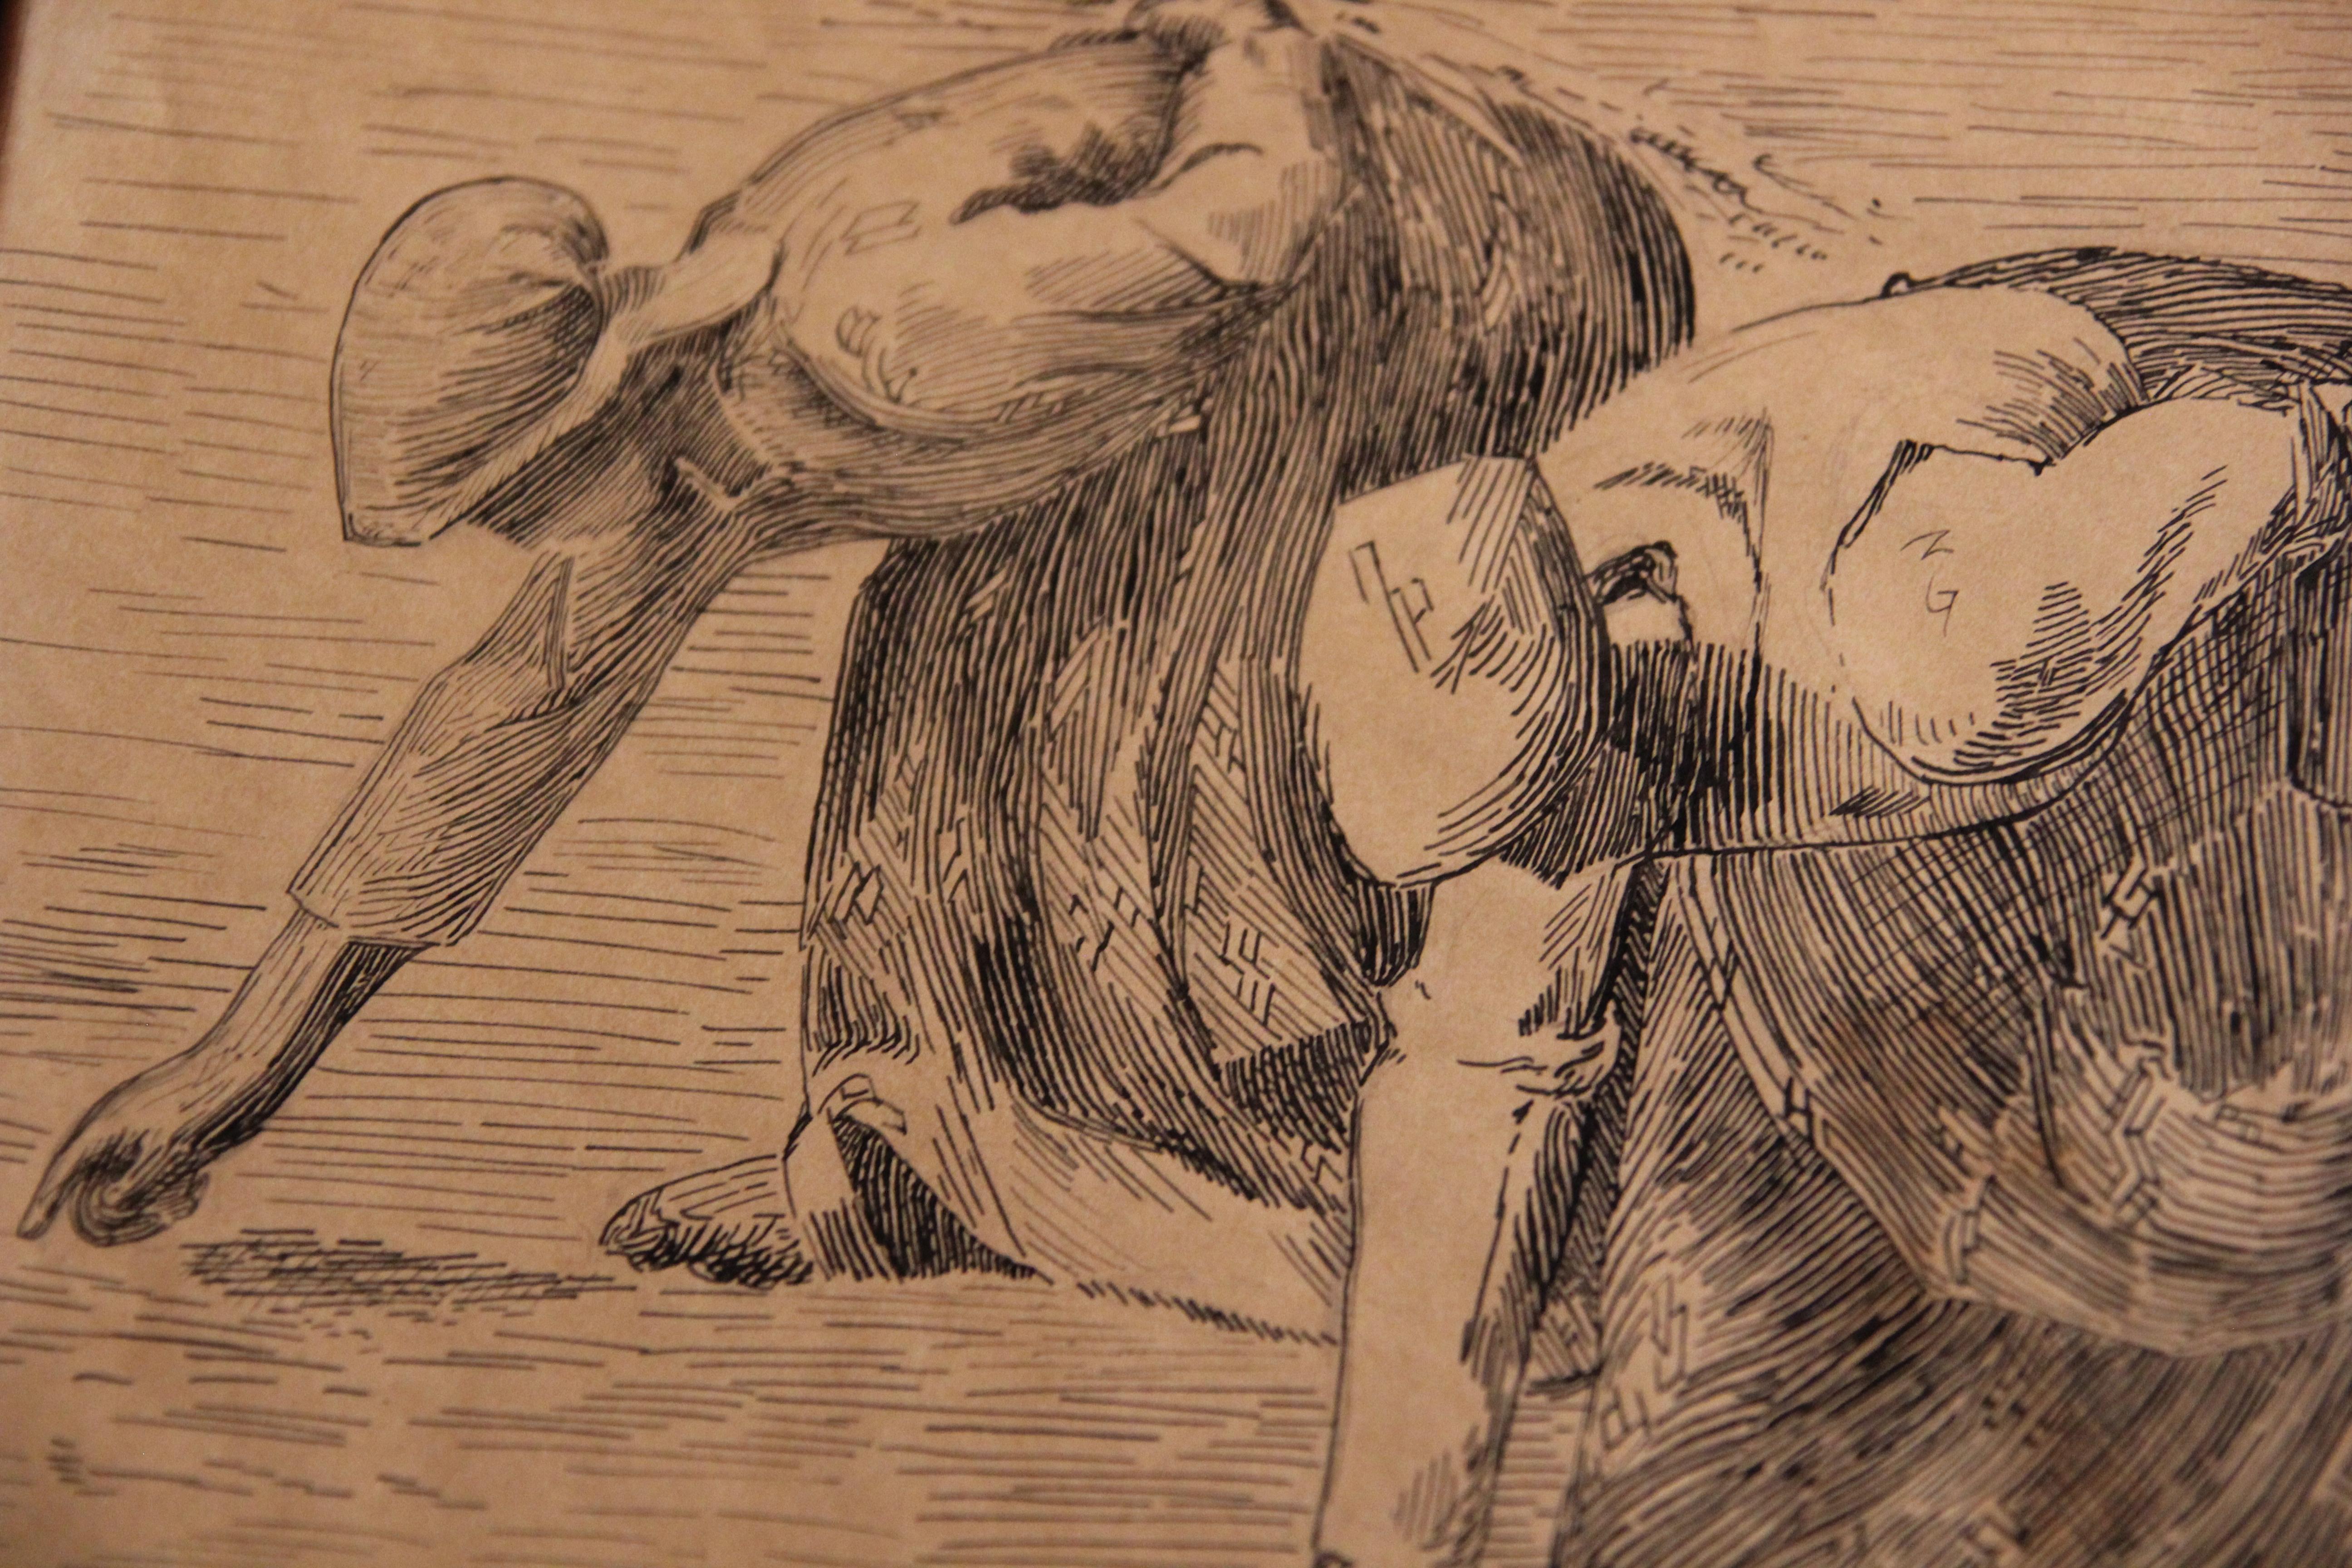 Étude de peinture à l'encre au dessin « The Gleaners » (D'après) - Réalisme Art par (After) Jean-François Millet